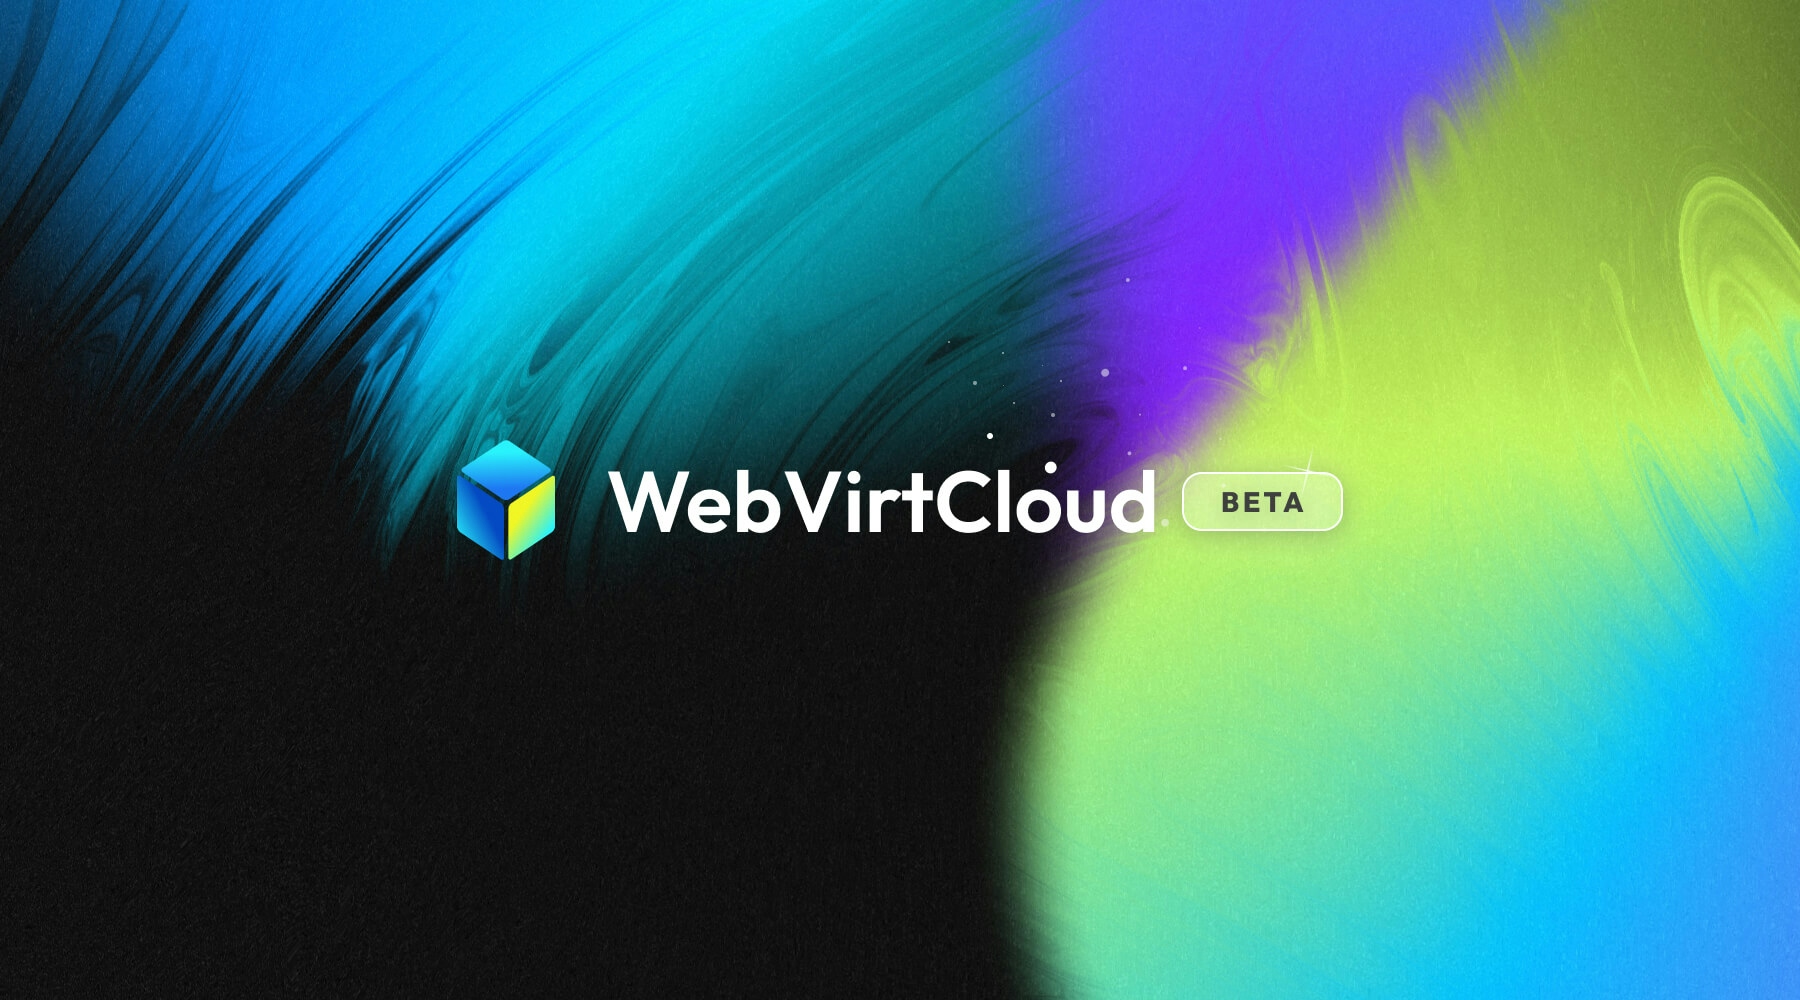 WebVirtCloud Beta Release Announcement